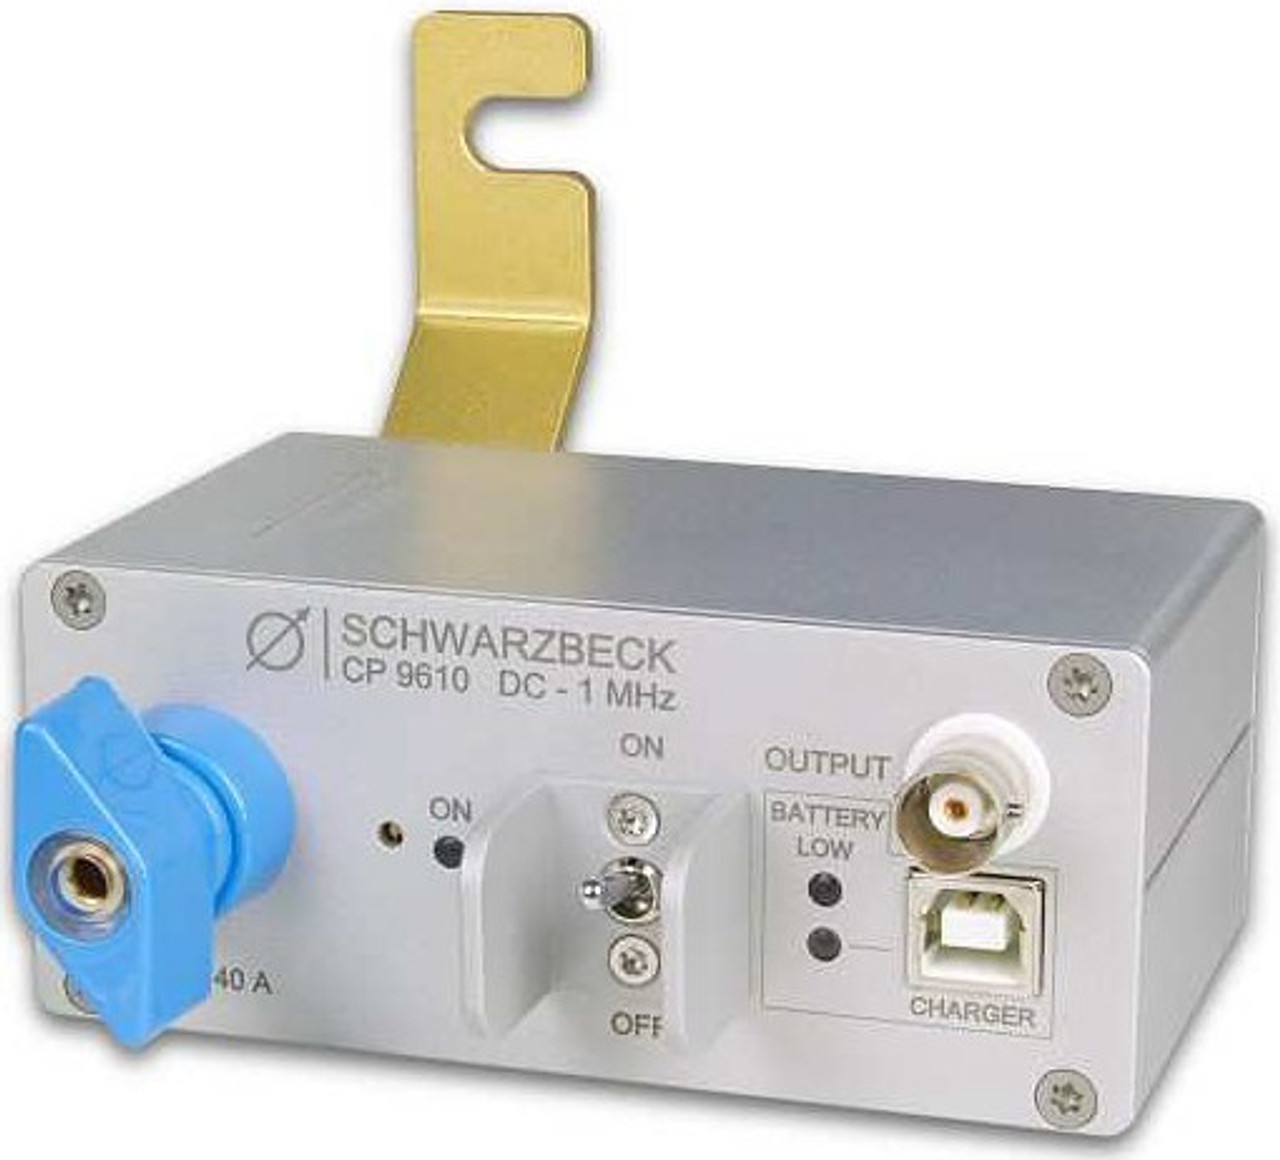 Schwarzbeck CP 9610 Current Probe 40A DC - 1 MHz